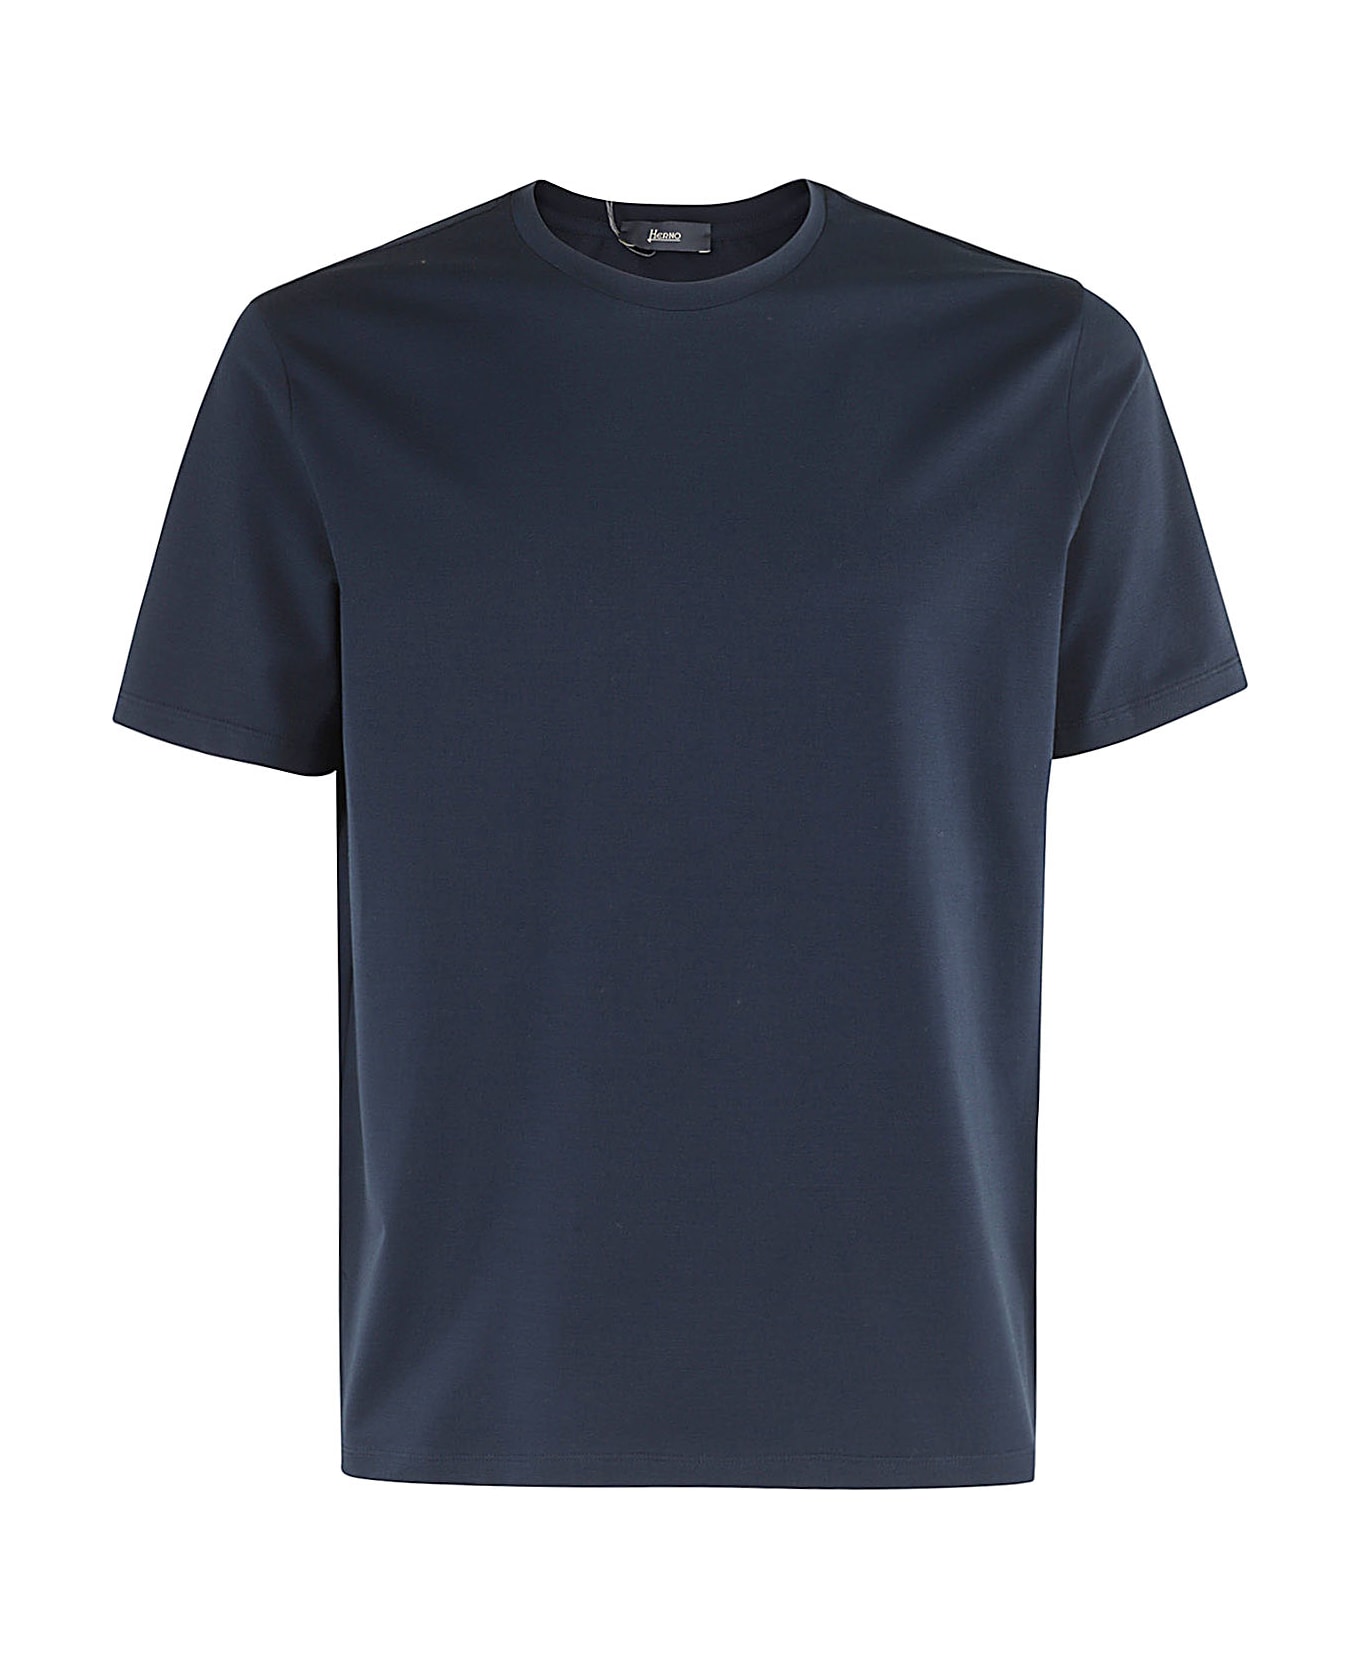 Herno Tshirt Jersey - Blu Navy シャツ